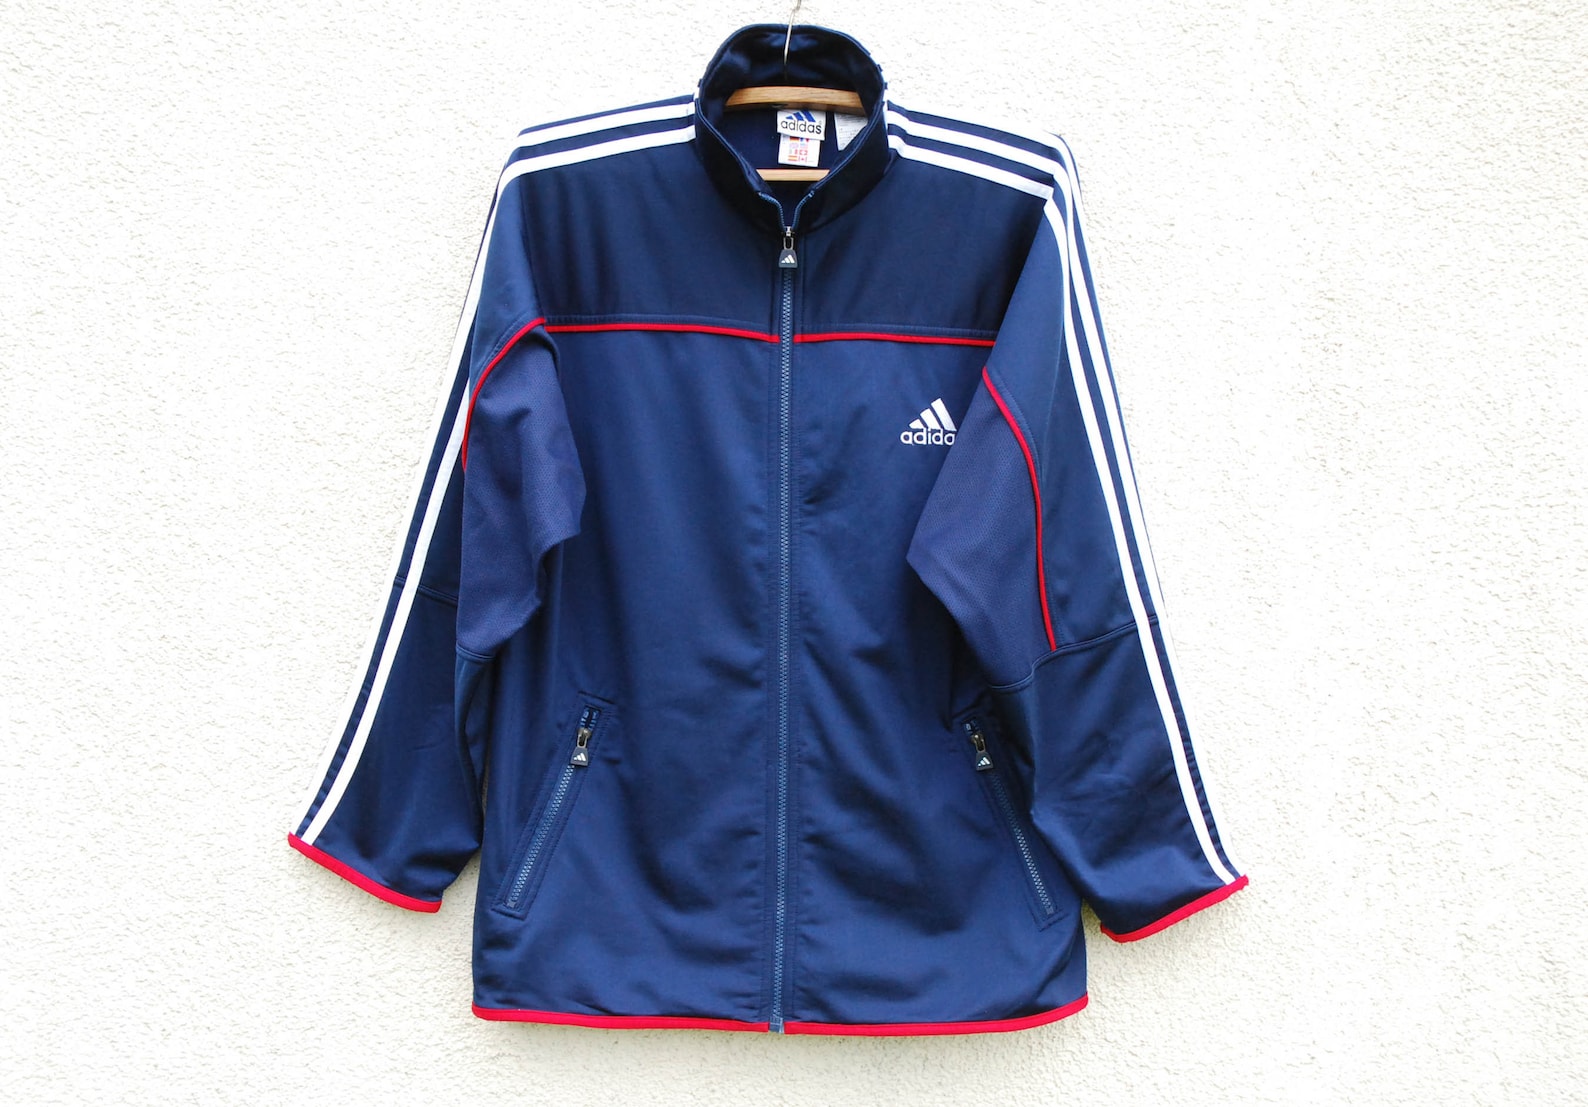 Vintage Adidas jacket / Blue Adidas jacket / White striped | Etsy